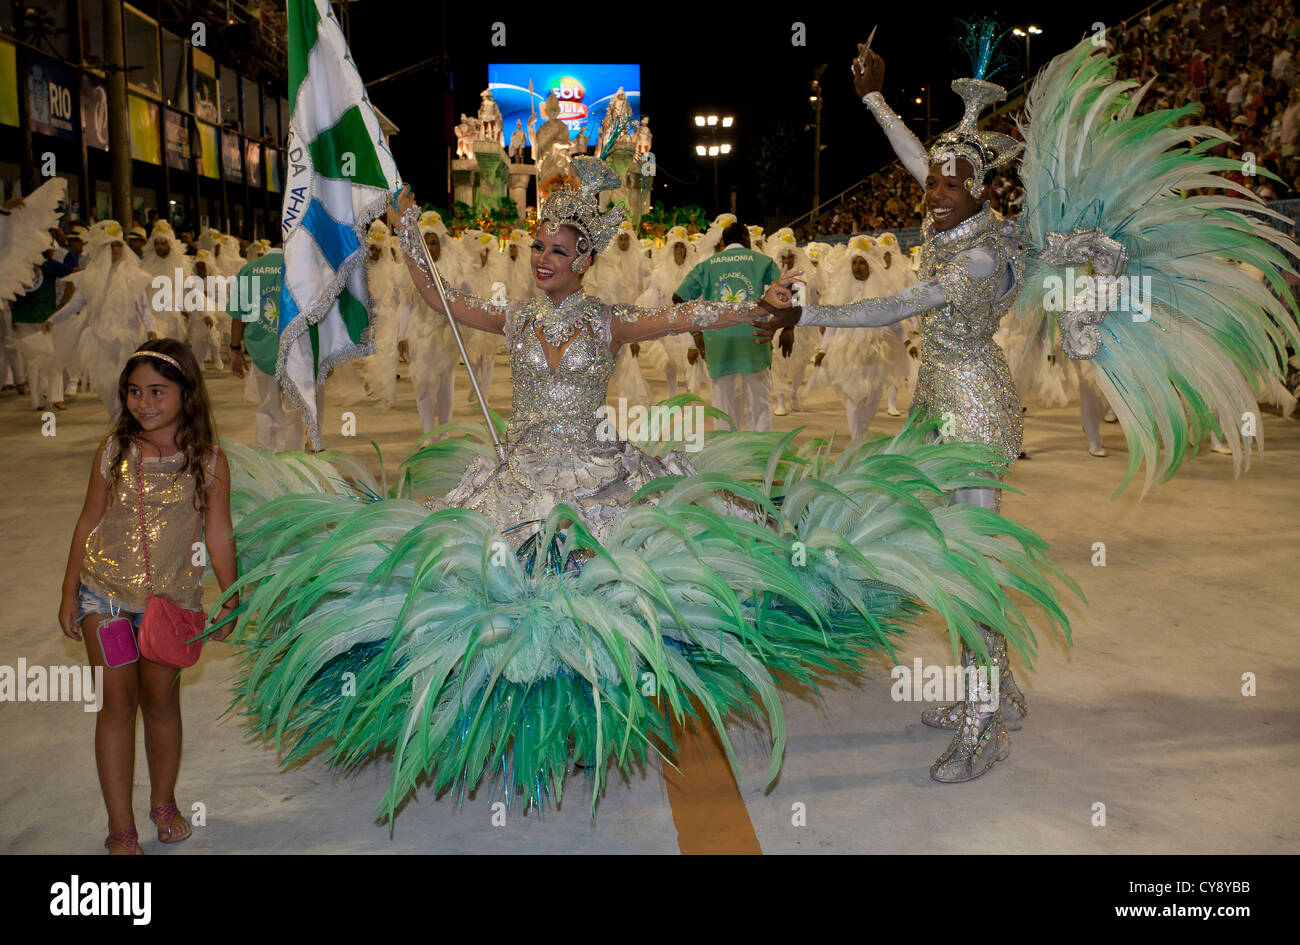 Défilé du carnaval dans le Sambadrome Rio de Janeiro Brésil Banque D'Images